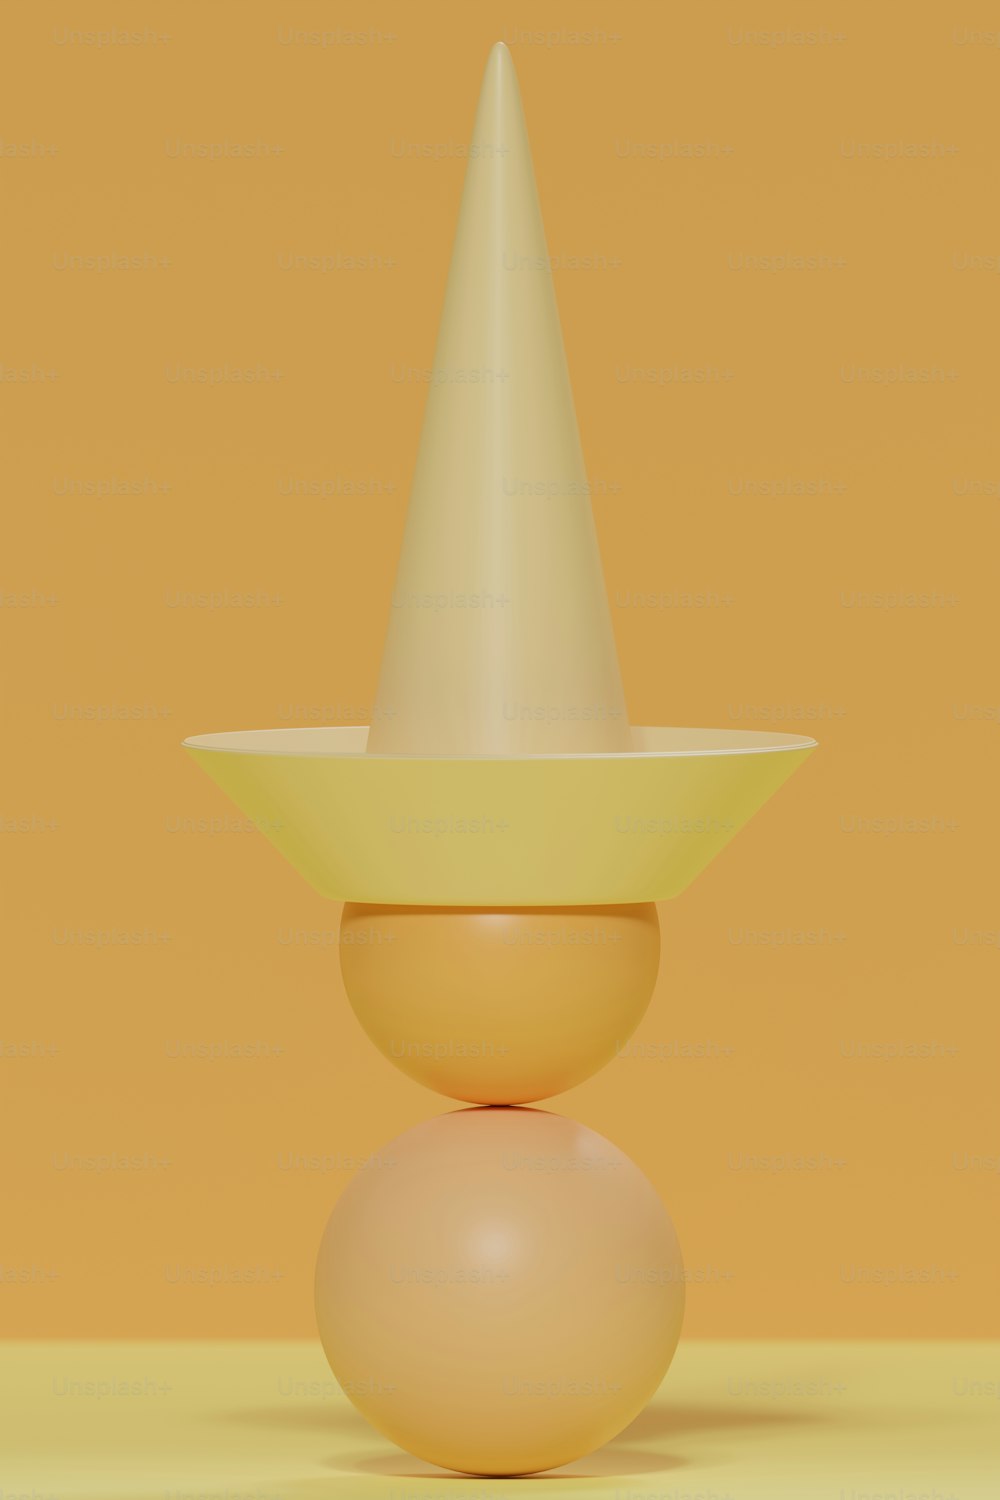 Un objeto amarillo con un cono blanco encima